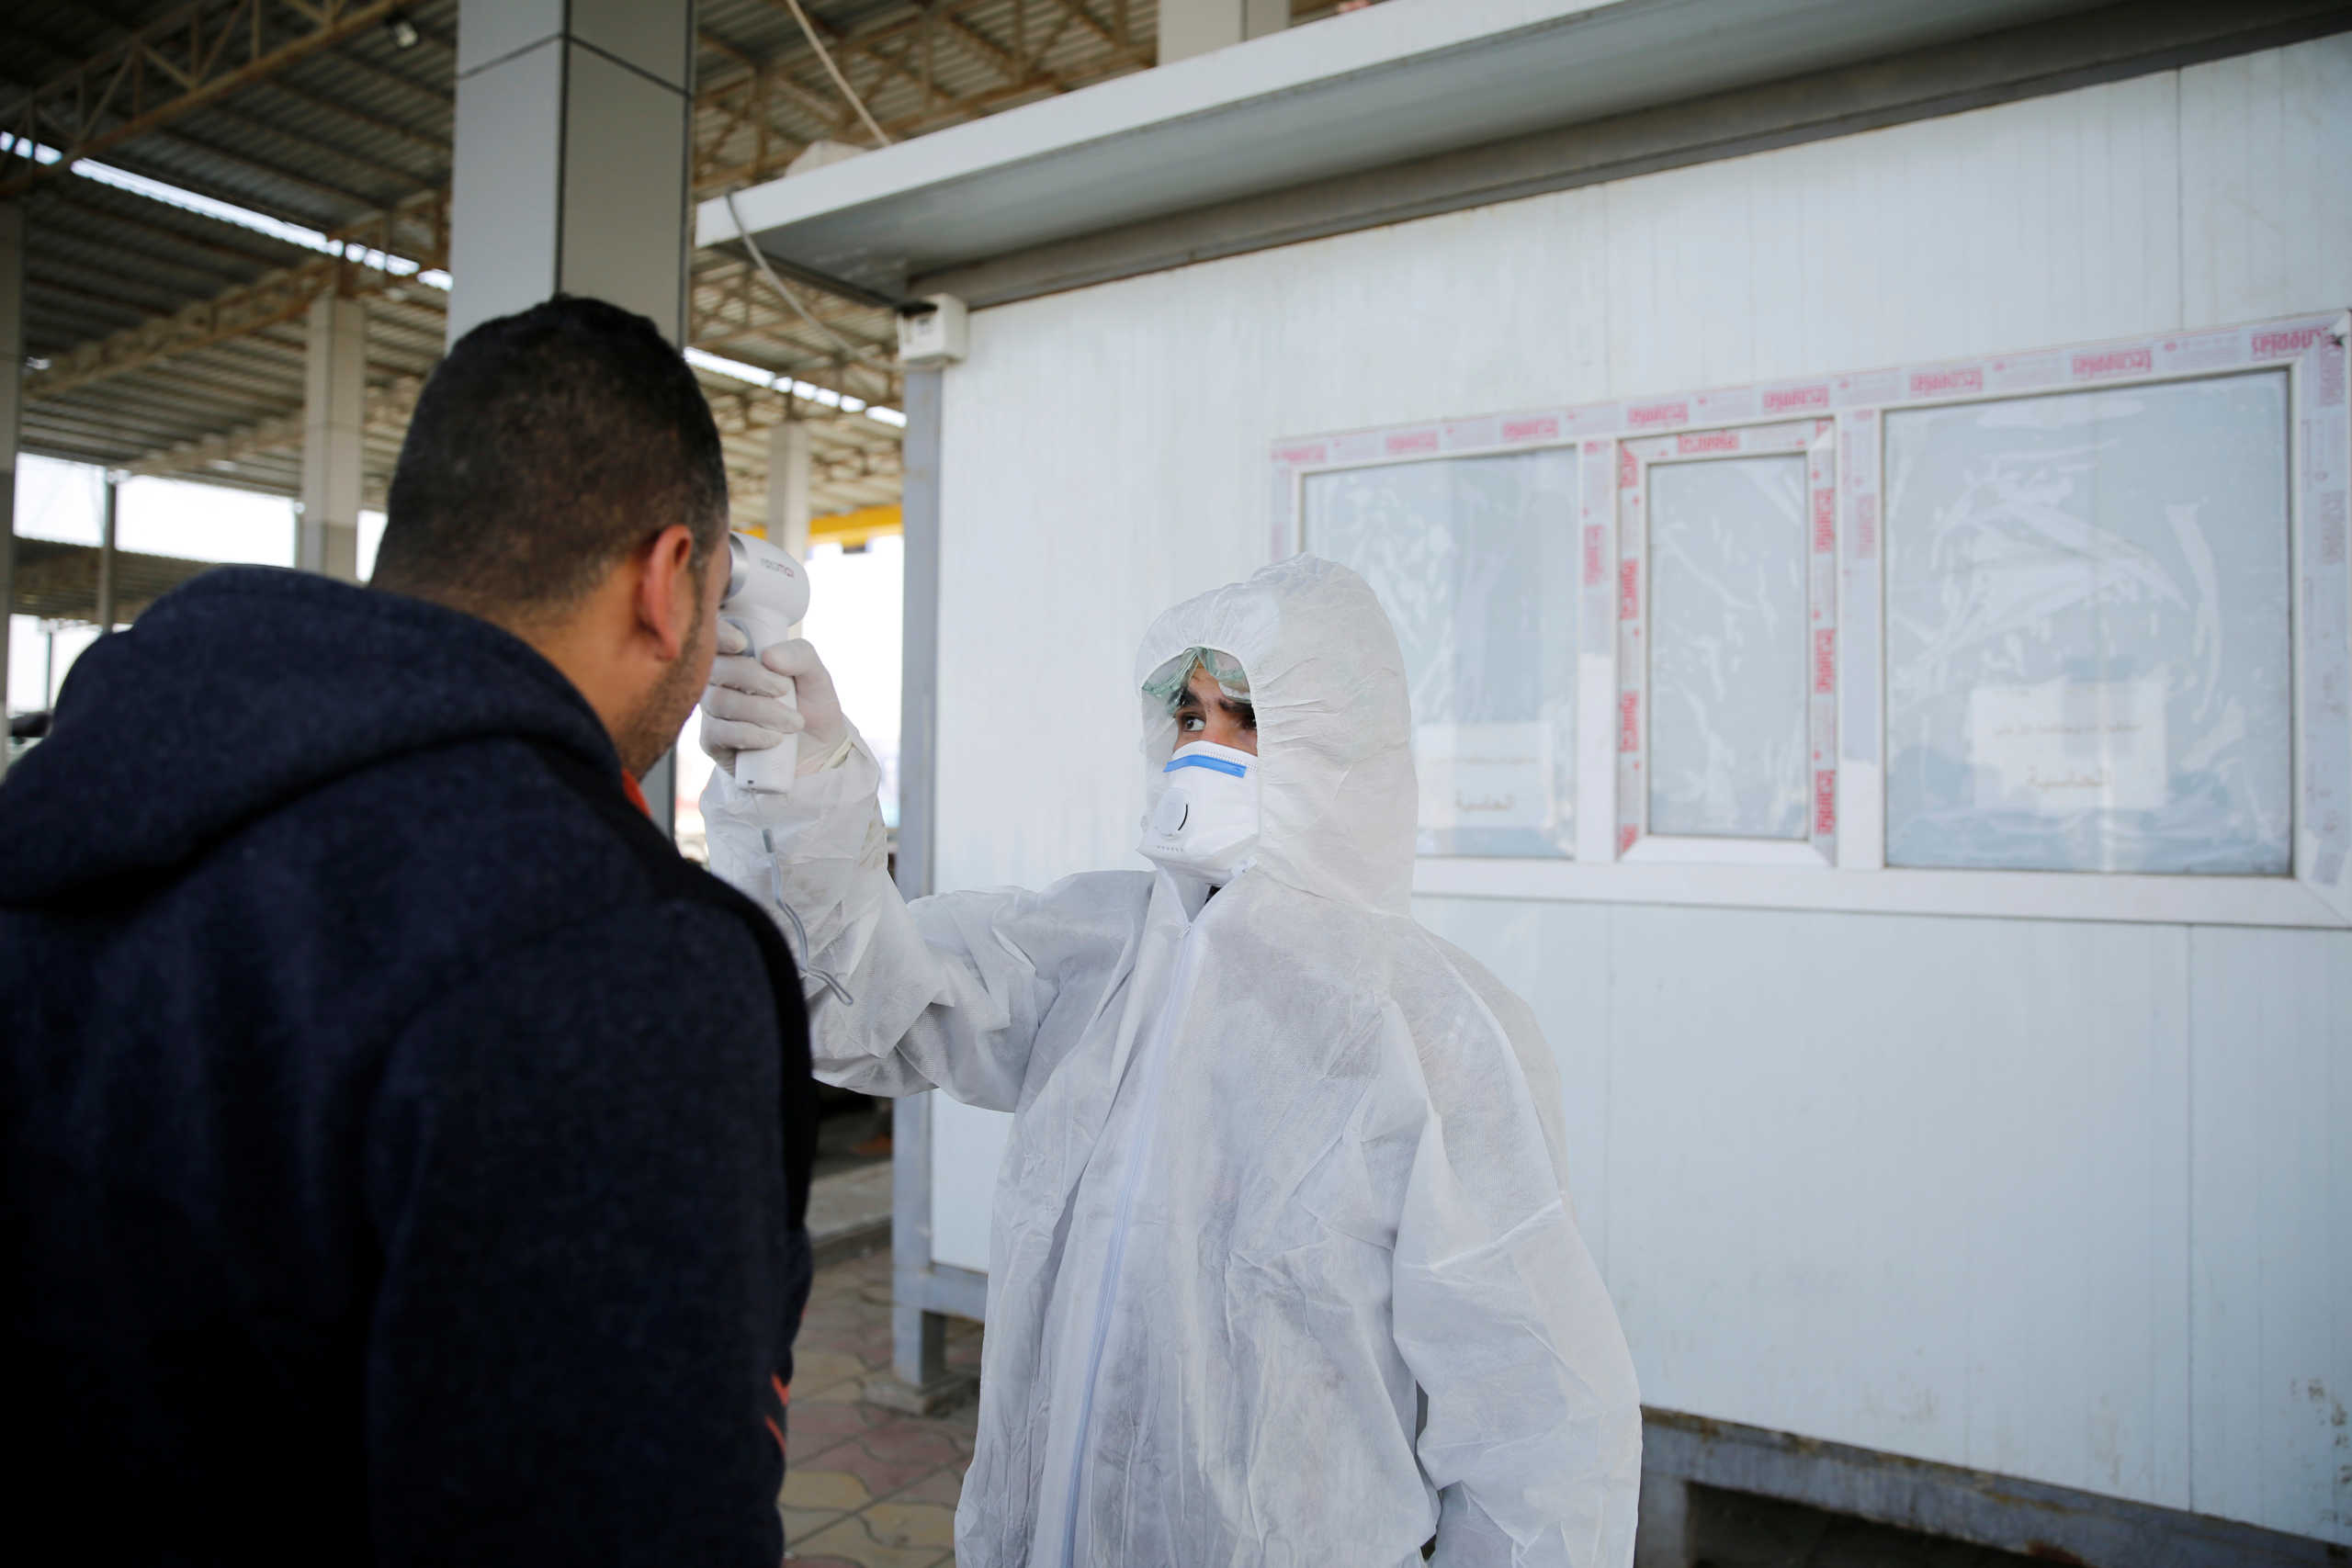 Κορονοϊός: Εργαζόμενοι στον τομέα υγείας στις ΗΠΑ εκτέθηκαν στον ιό χωρίς προστατευτικό εξοπλισμό